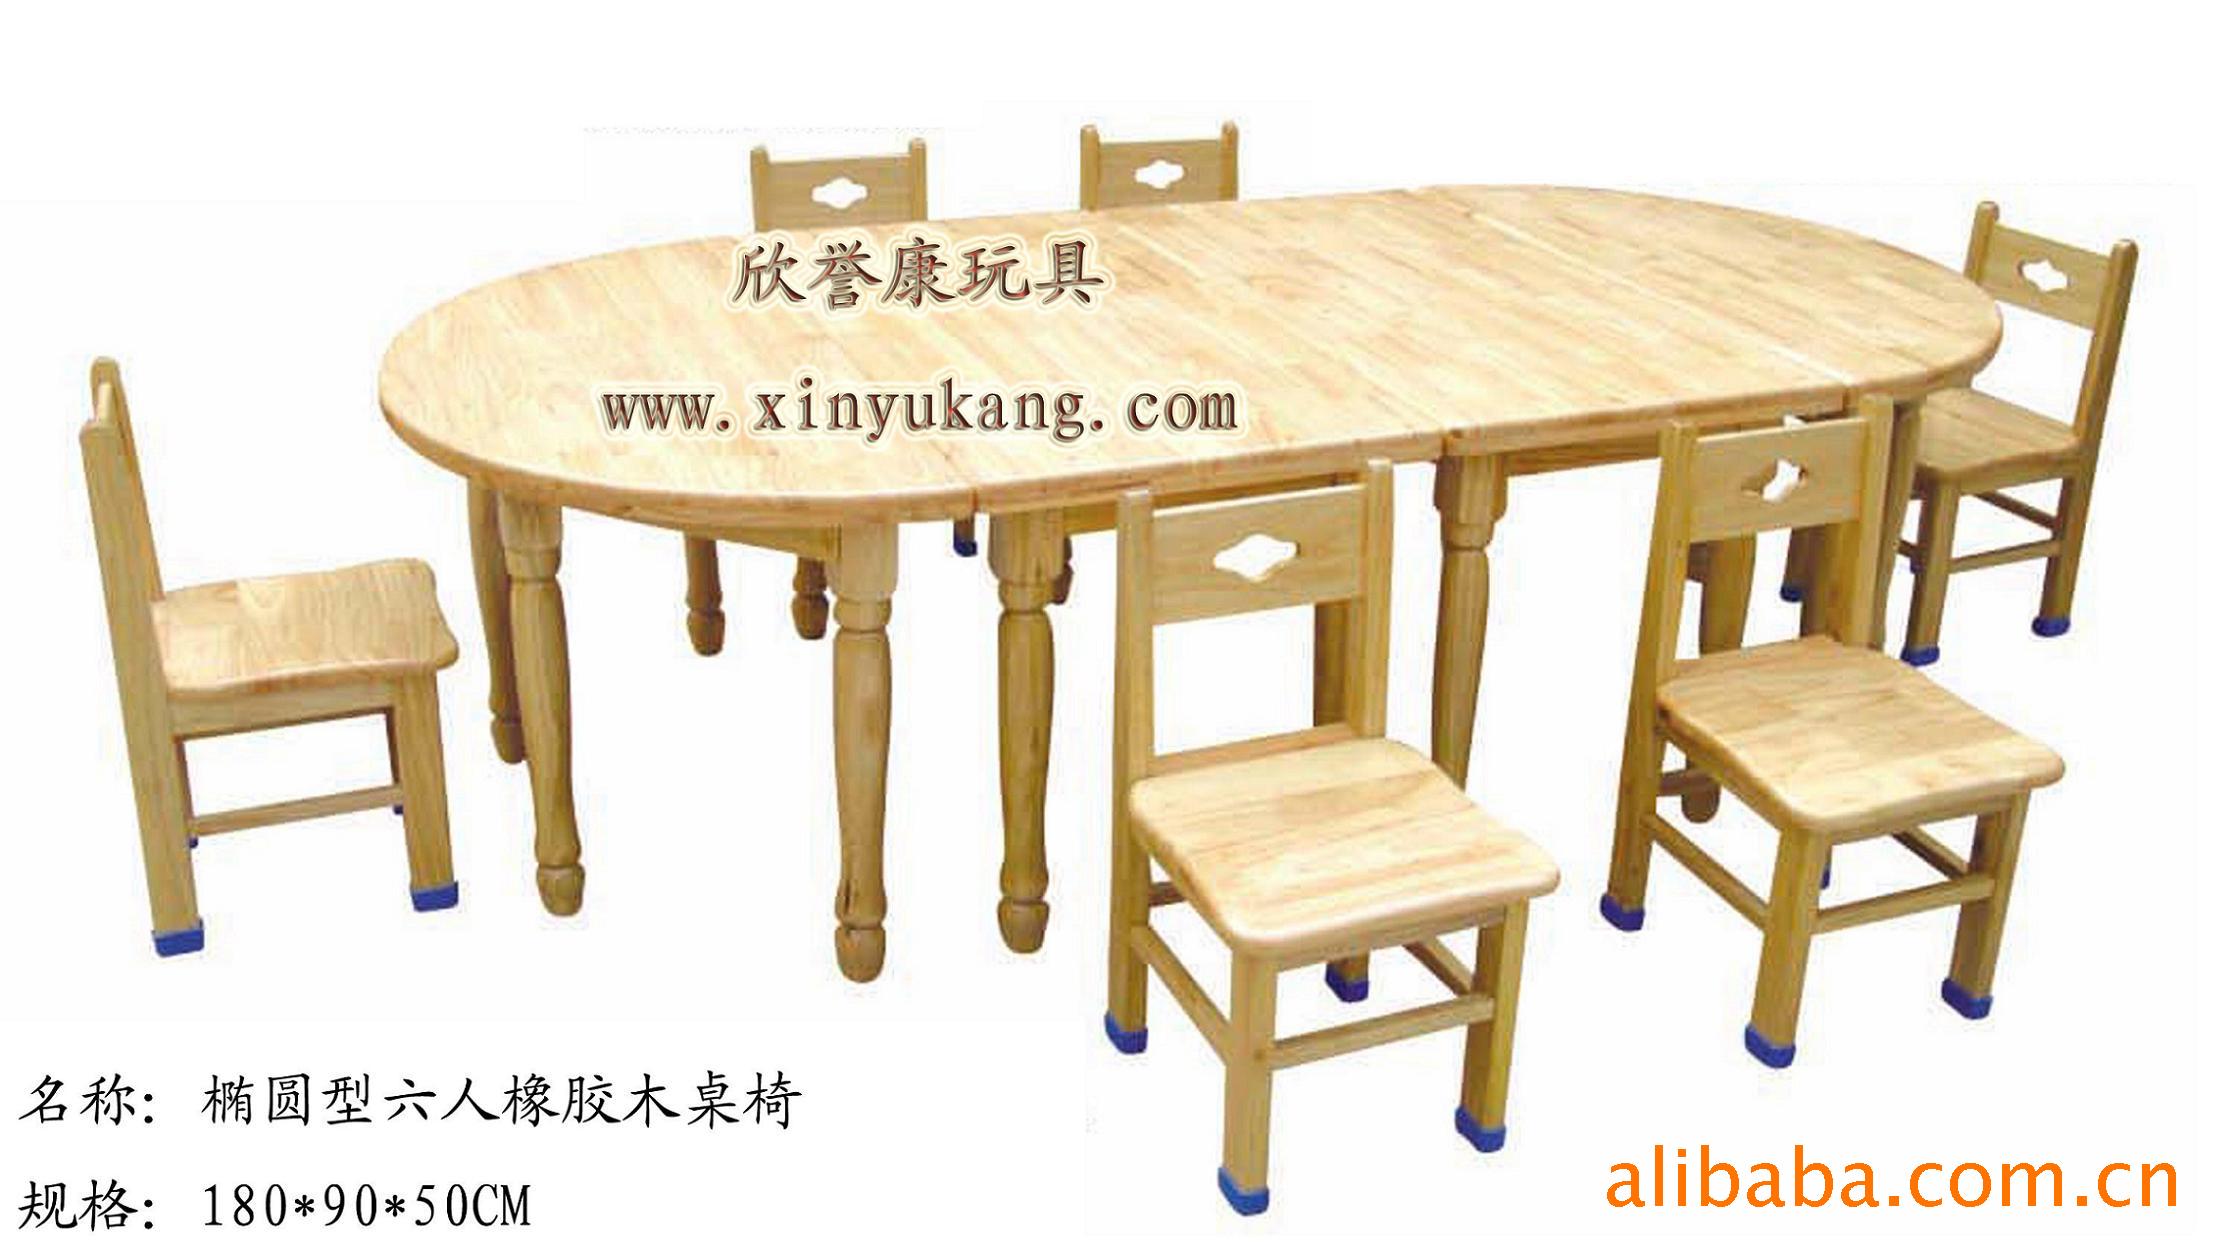 厂家直销优质课桌椅,橡胶木幼儿桌,教学豪华教学桌信息